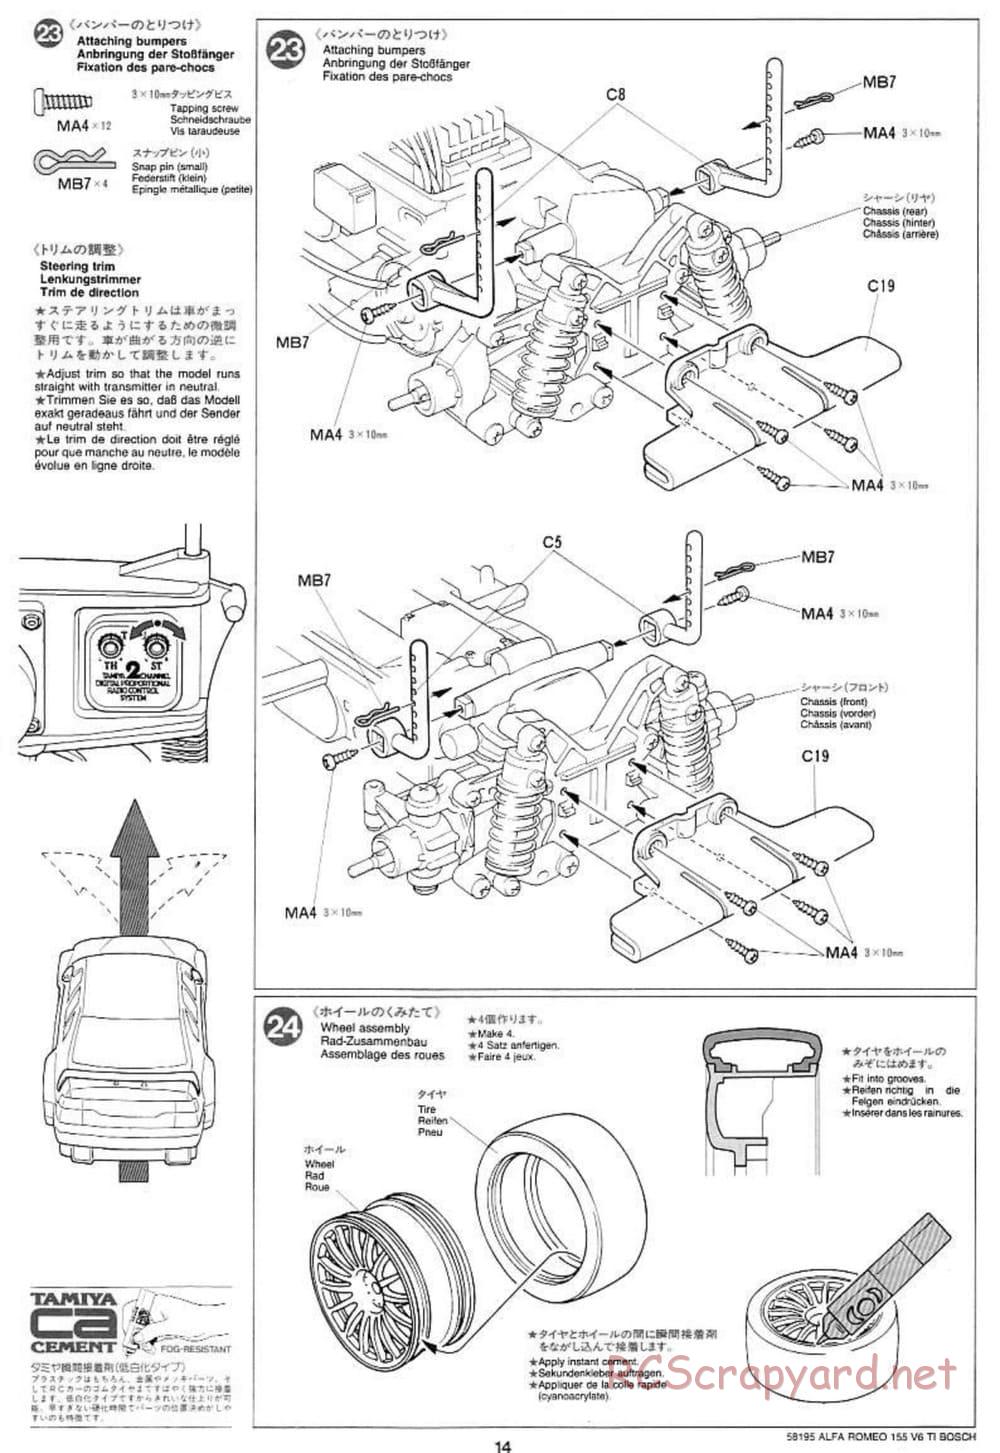 Tamiya - Alfa Romeo 155 V6 TI BOSCH - TL-01 Chassis - Manual - Page 14